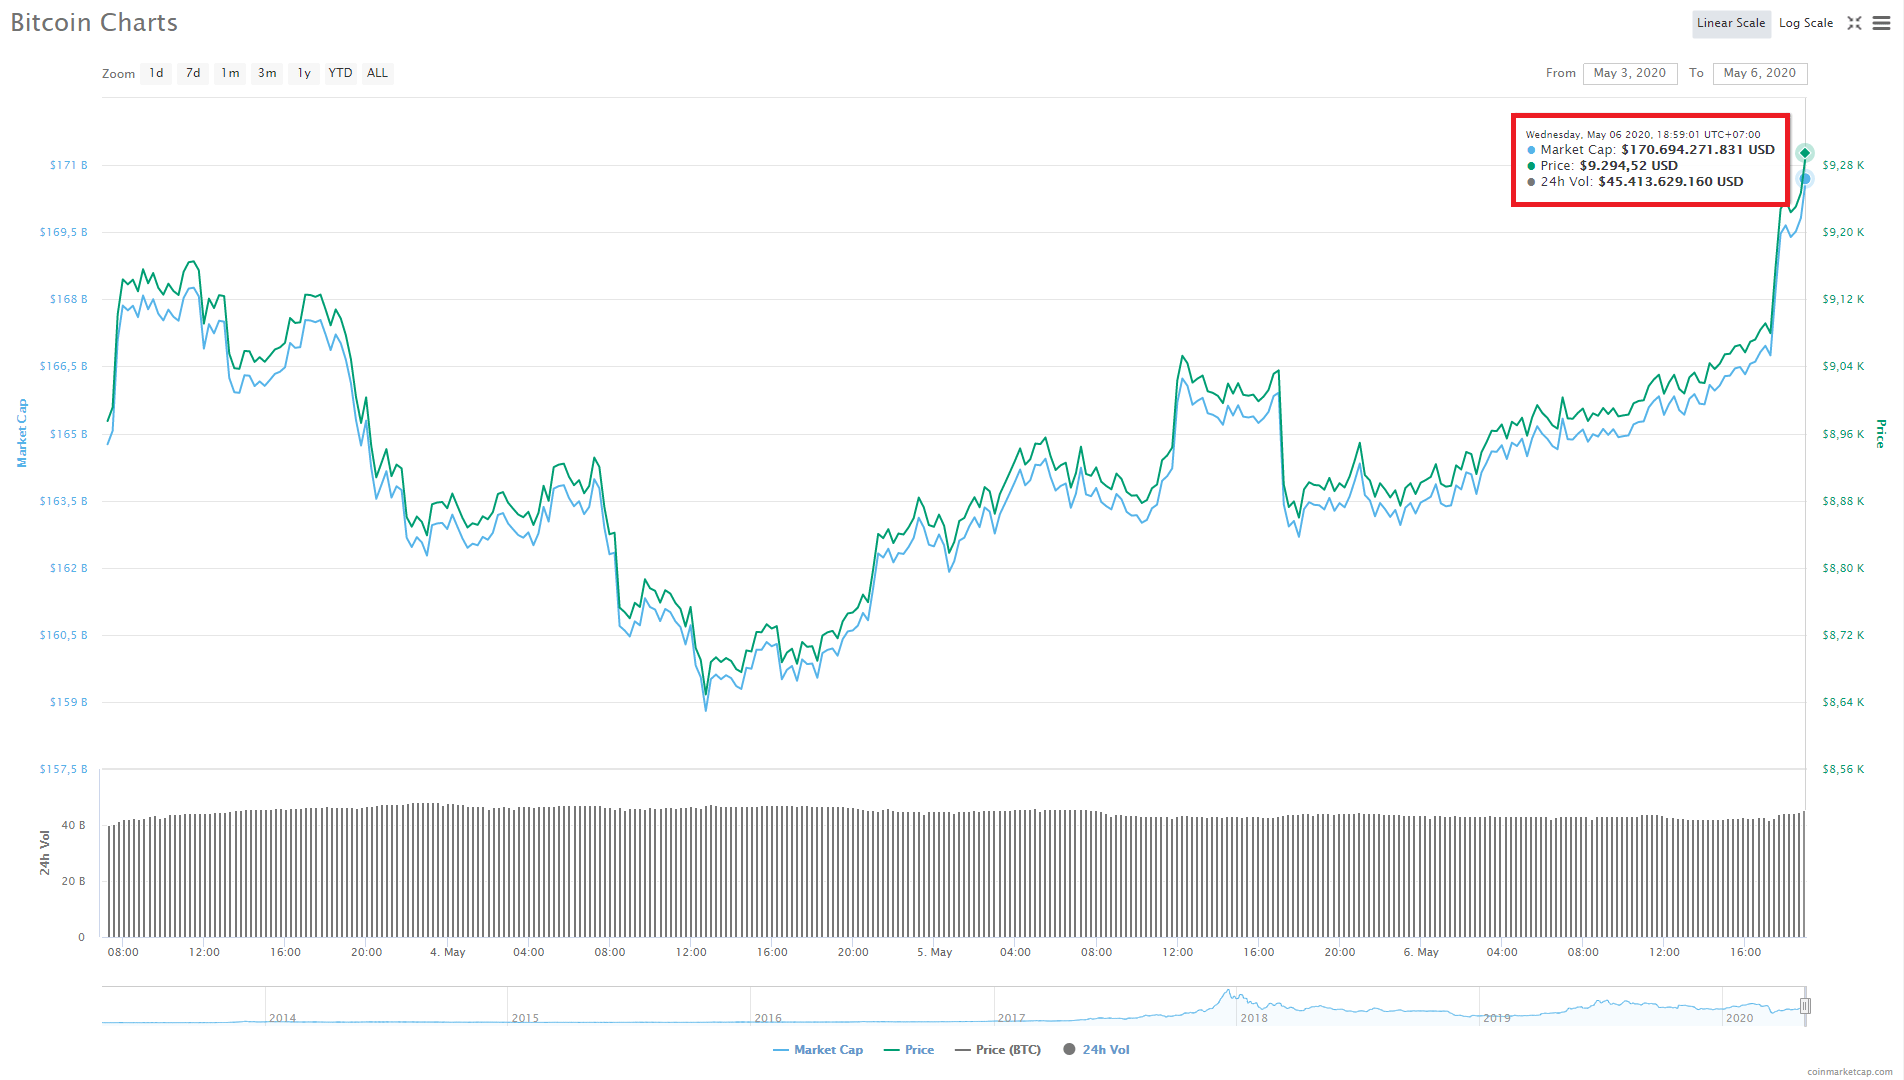 Cập nhật giá ngày 06/05: Bitcoin quay trở lại ngưỡng $9,375 giữa lúc số lượng hợp đồng tương lai BTC trên CME đạt đỉnh 10 tháng